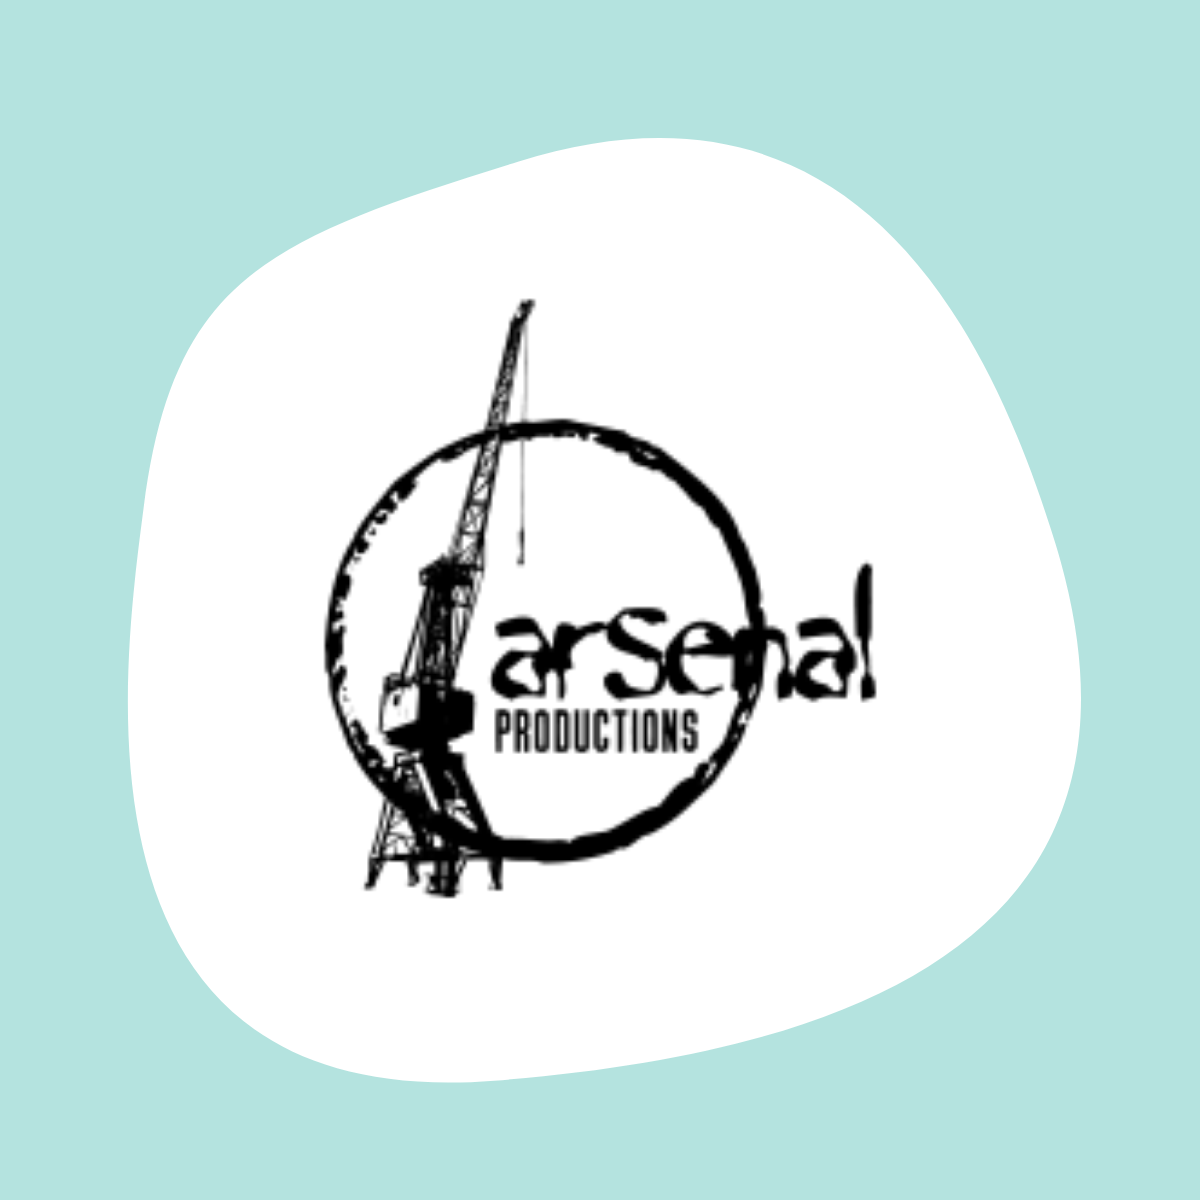 Bienvenue à ARSENAL Productions